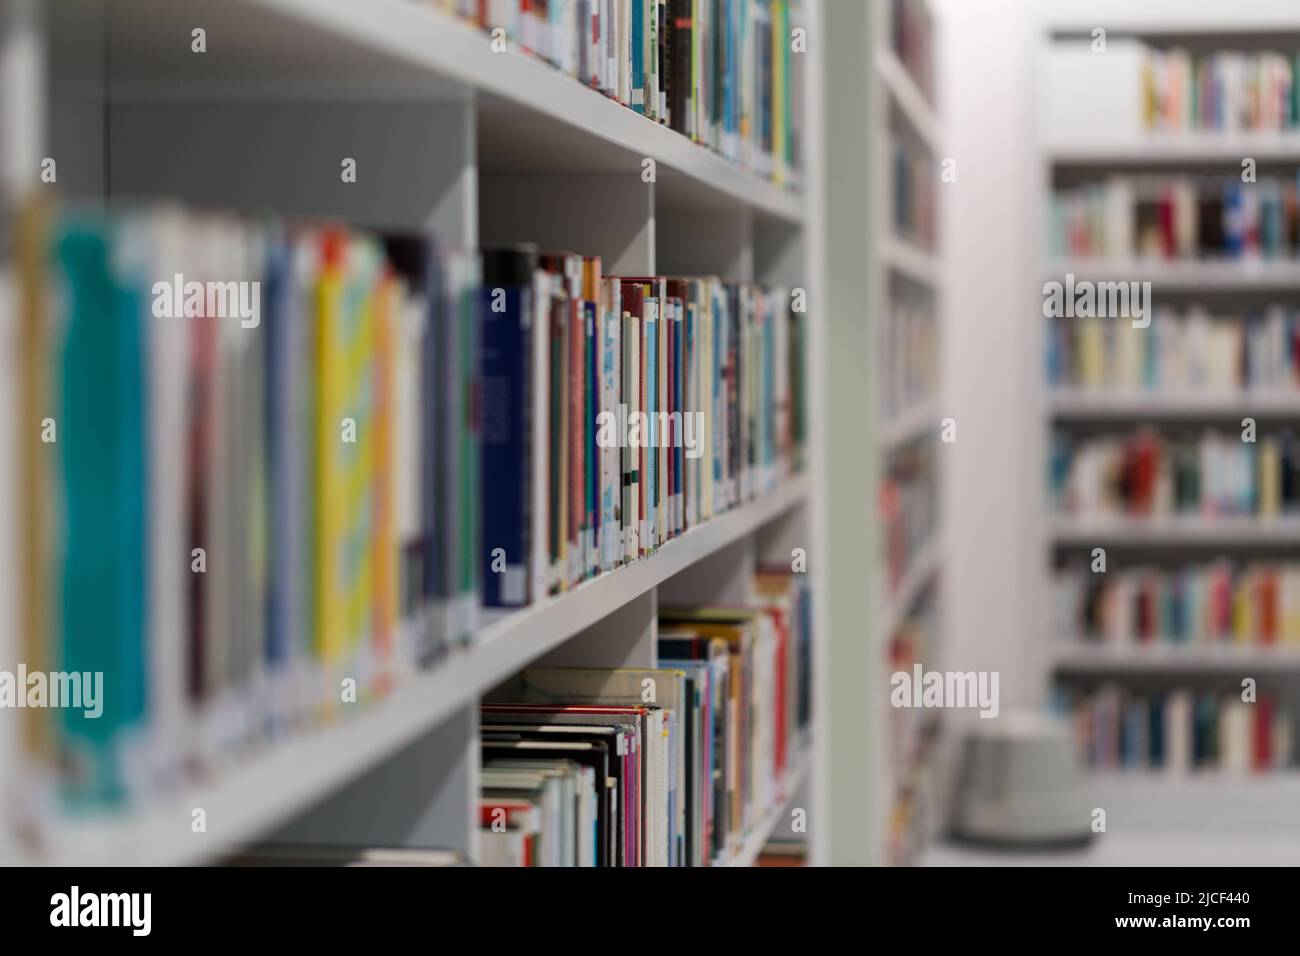 Stuttgart, Alemania - 16 de noviembre de 2021: Vista lateral del libro en una estantería de la biblioteca pública. Luz brillante, fondo borroso. Símbolo para el conocimiento y la lectura. Foto de stock